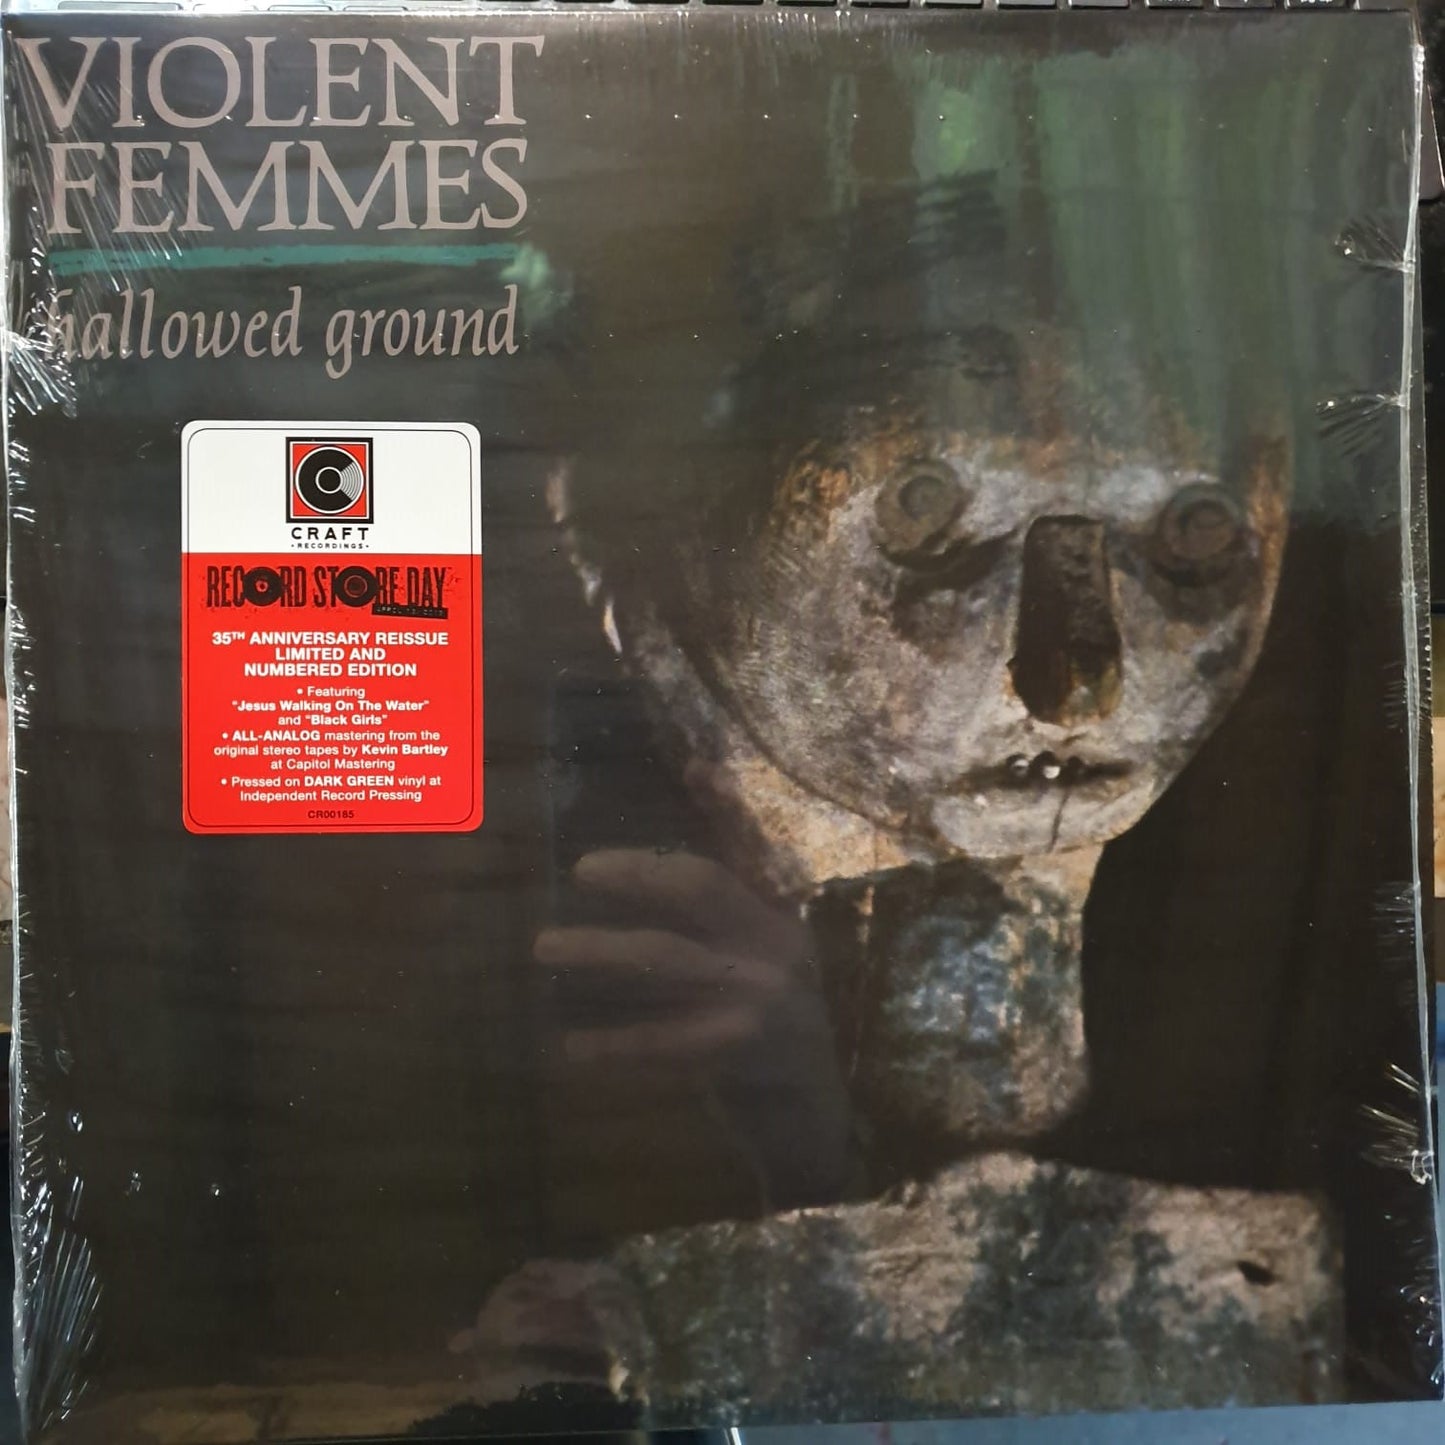 NEW - Violent Femmes, Hallowed Ground LP